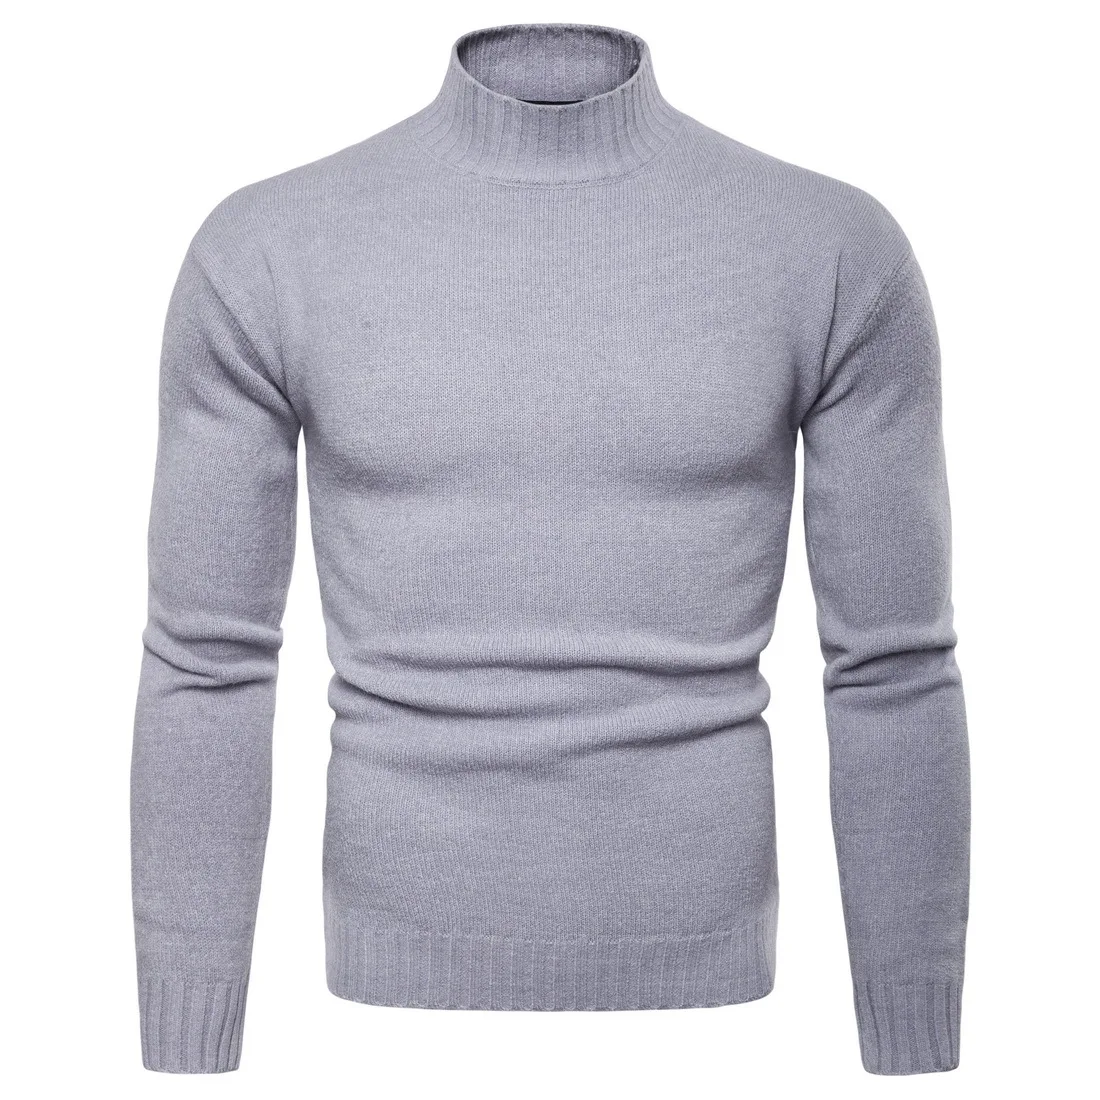 Vomint, брендовые новые мужские пуловеры, свитера с высоким воротом, базовые Повседневные свитера с длинными рукавами, свитера с высоким воротником